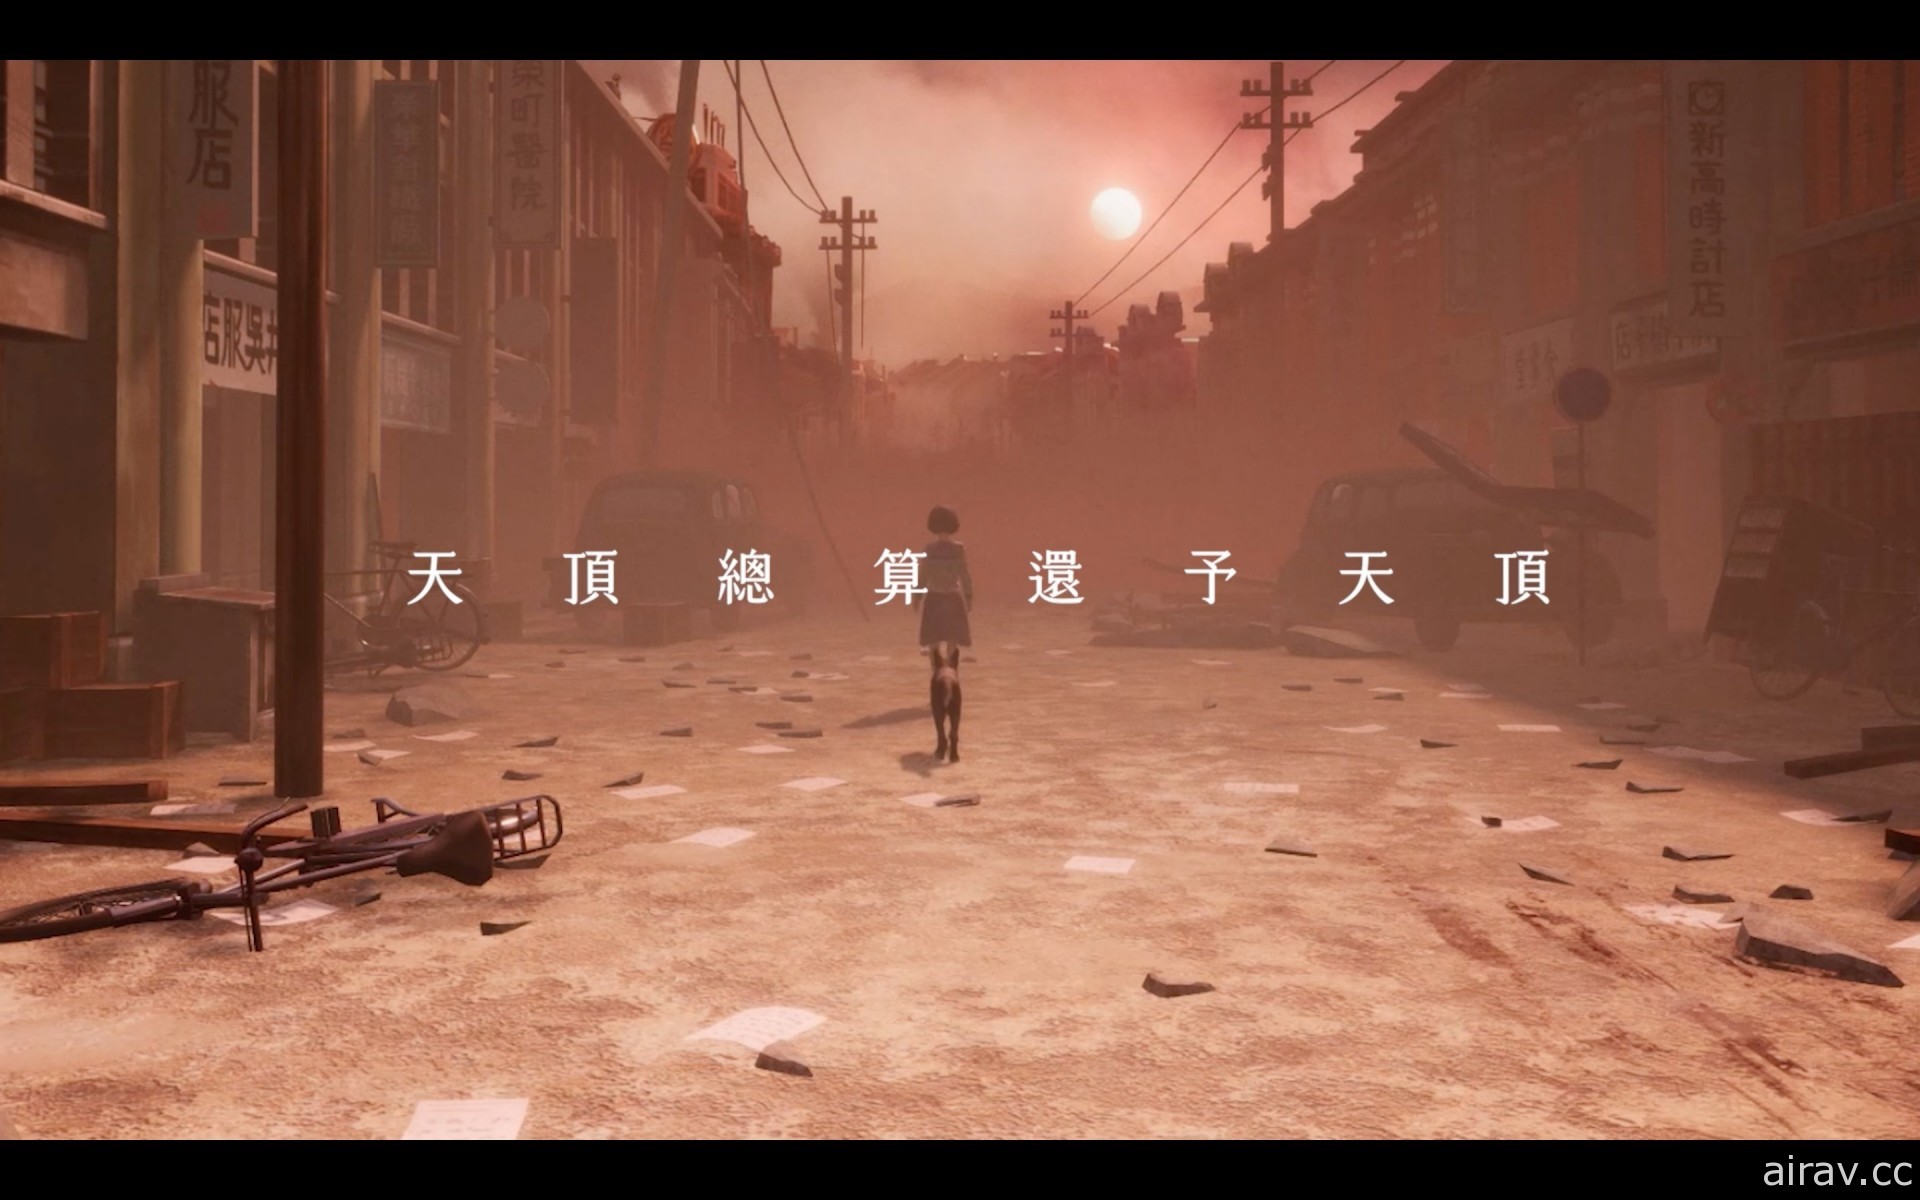 桌游同名改编游戏《台北大空袭》公开片尾主题曲前导宣传影片